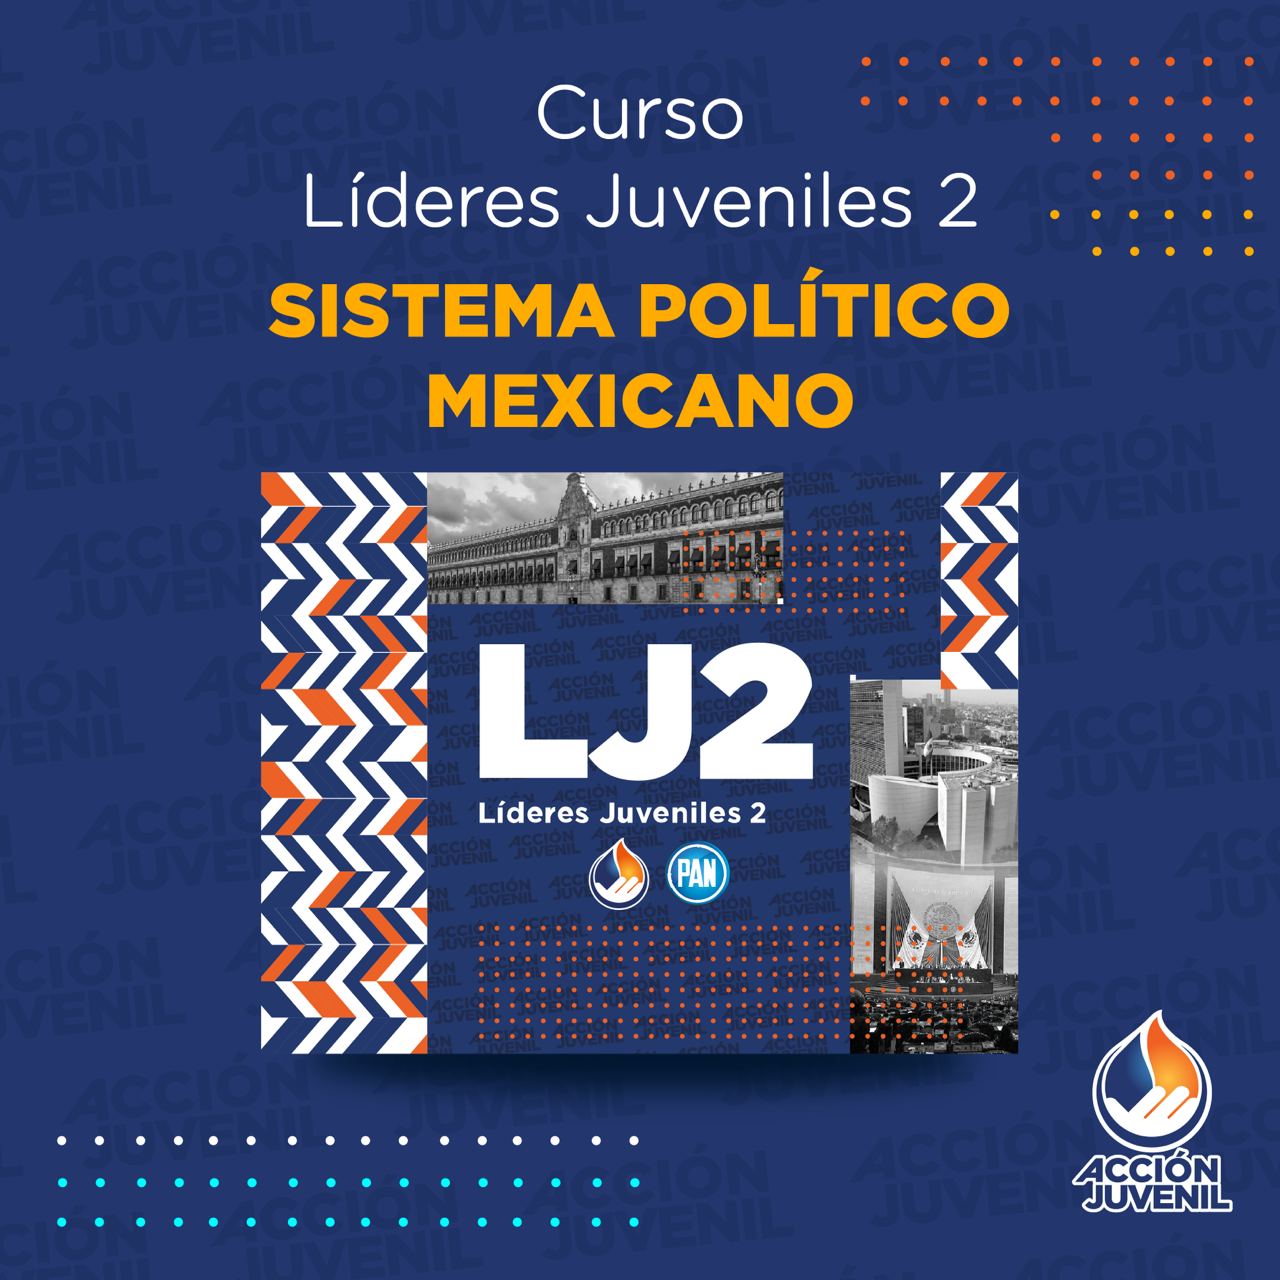 Curso Líderes Juveniles 2 Sistema Político Mexicano Naucalpan, MEX 05/11/22